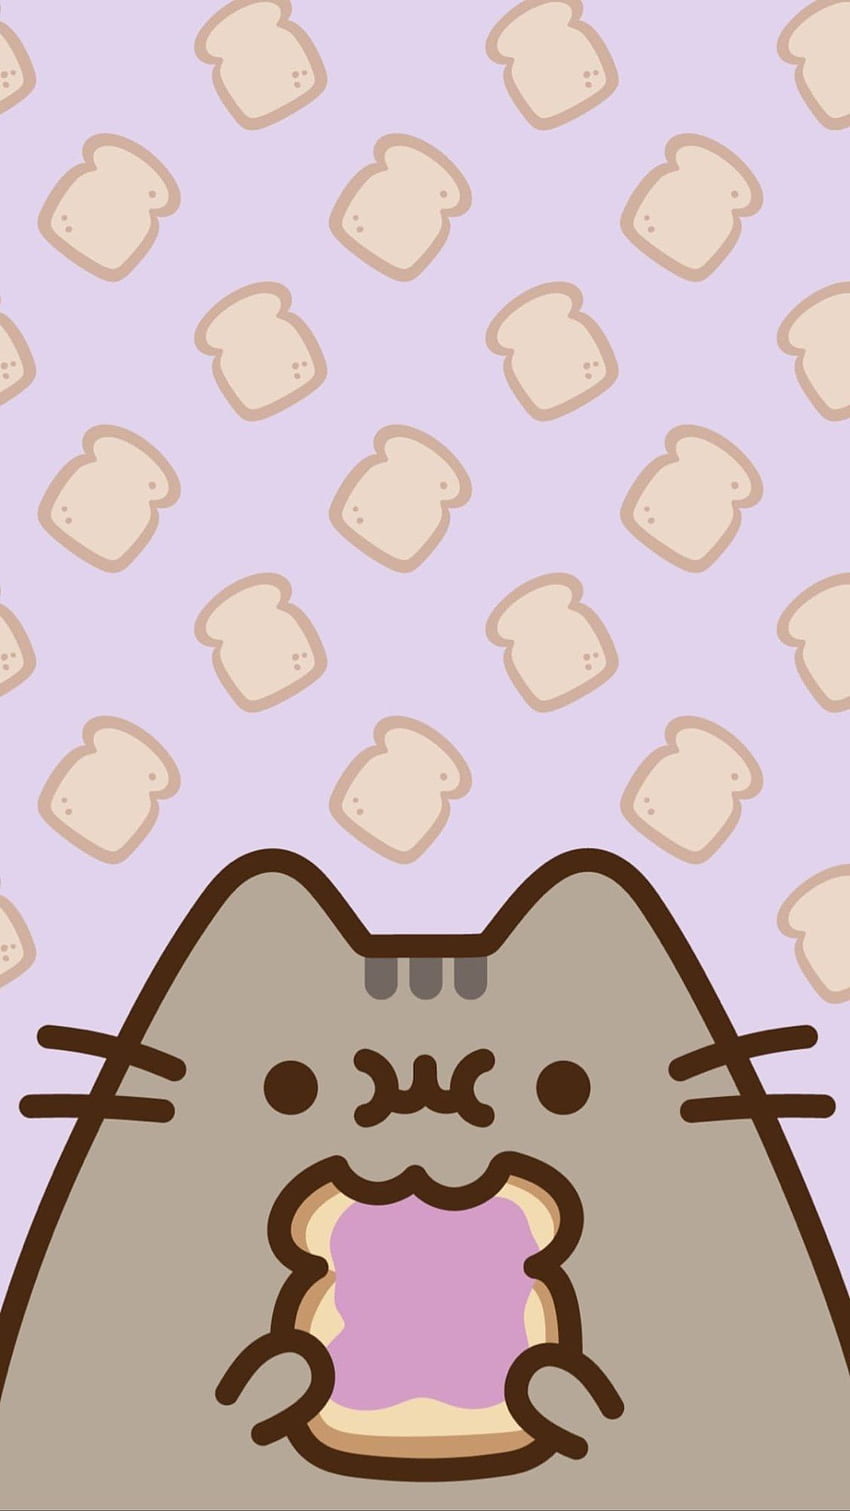 トールトースト。 プシーン かわいい, プシーン, 猫, カワイイ, ドーナツ プシーン HD電話の壁紙